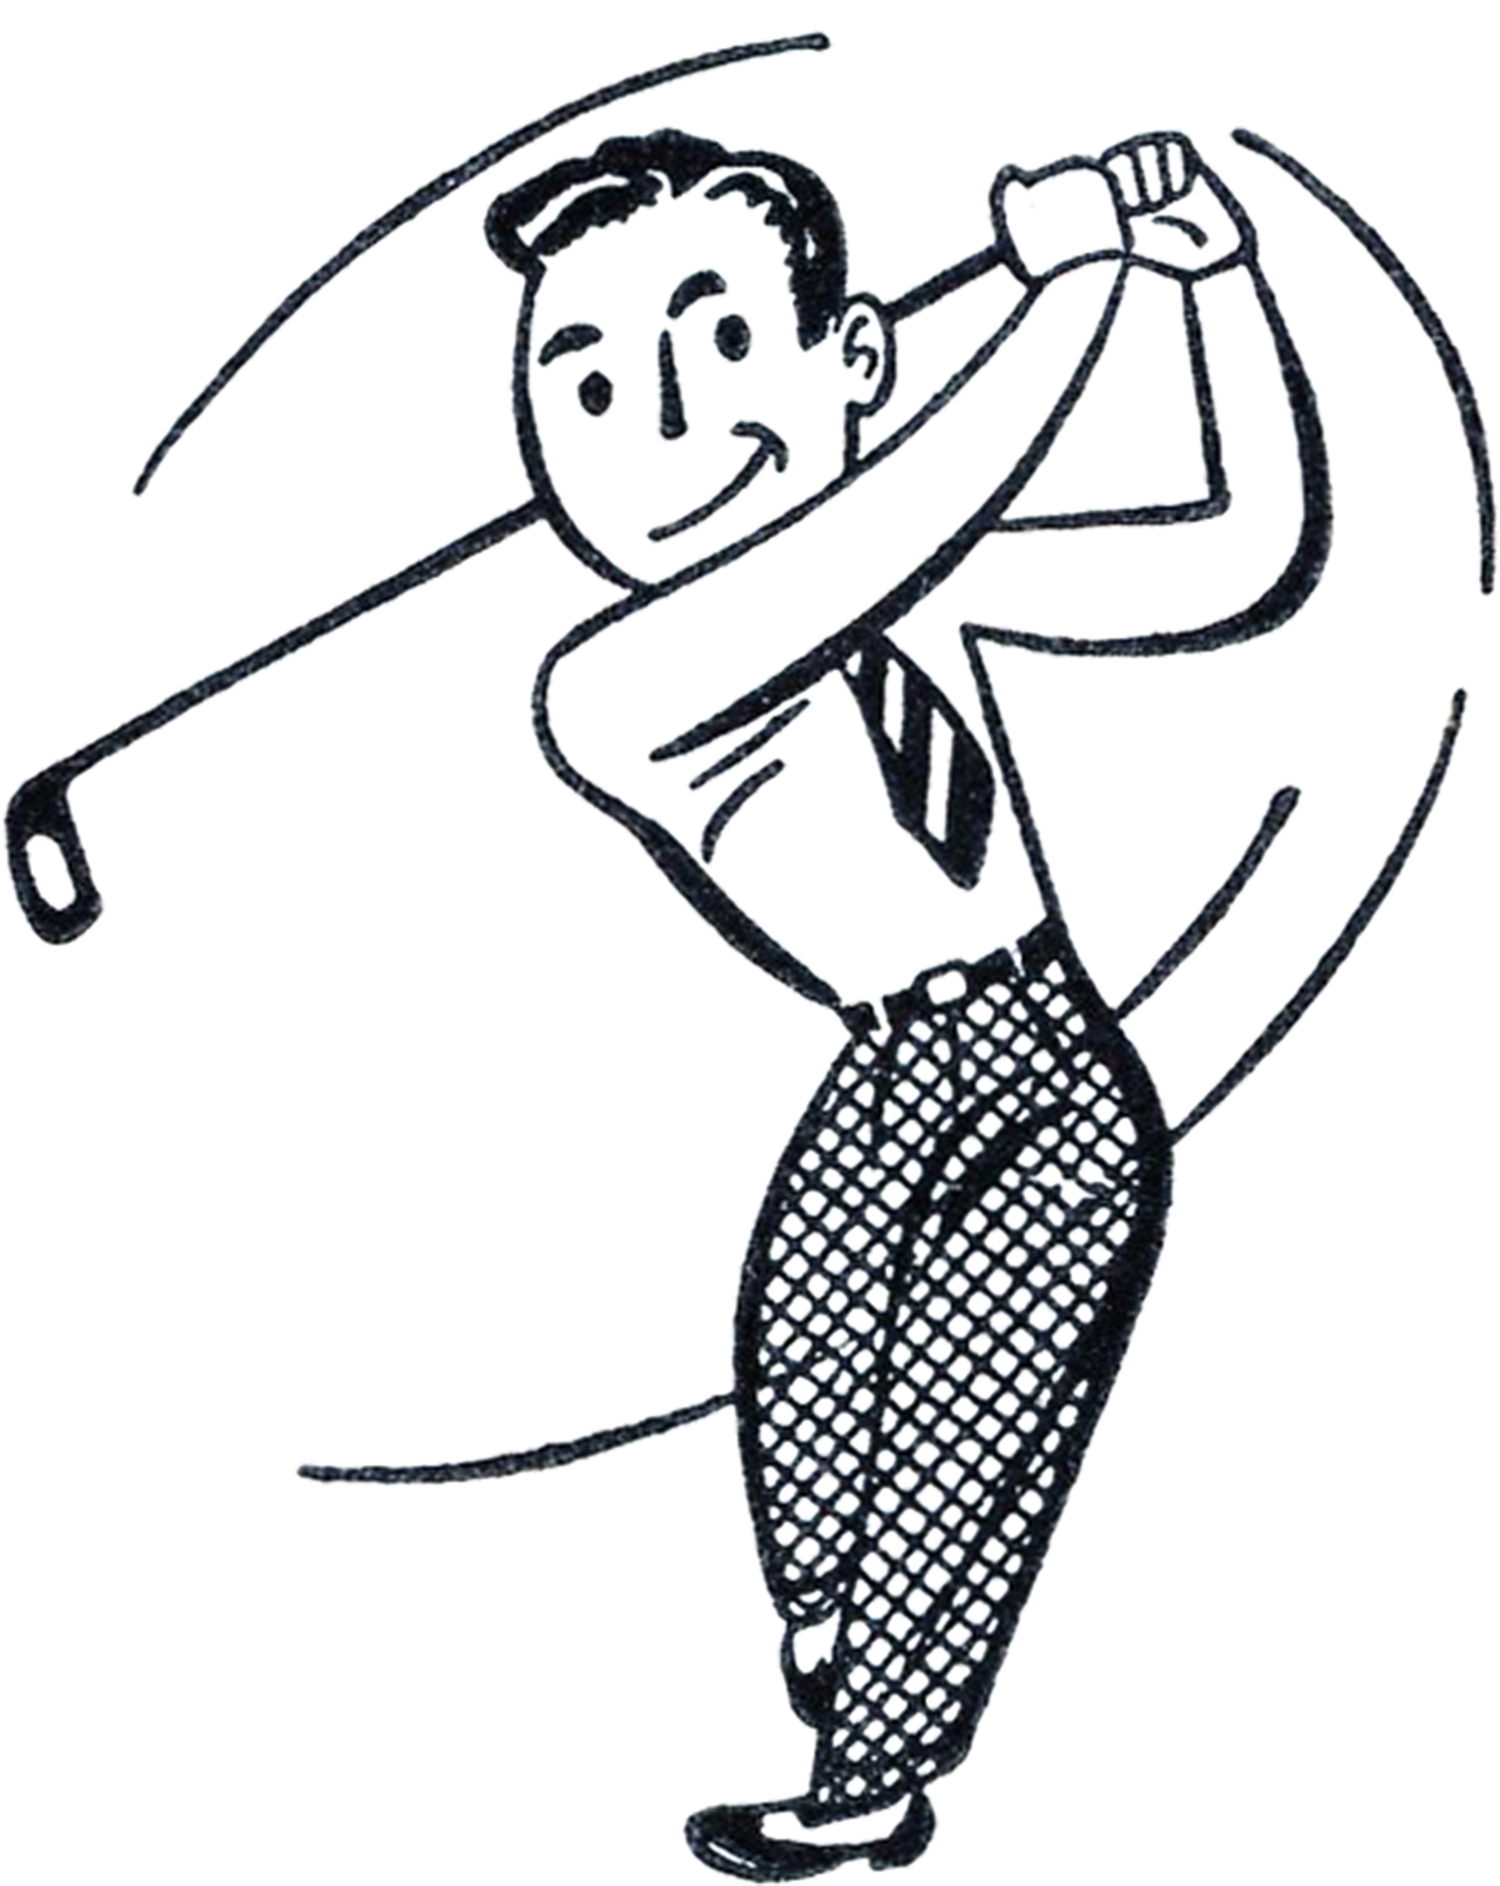 golf clipart line art